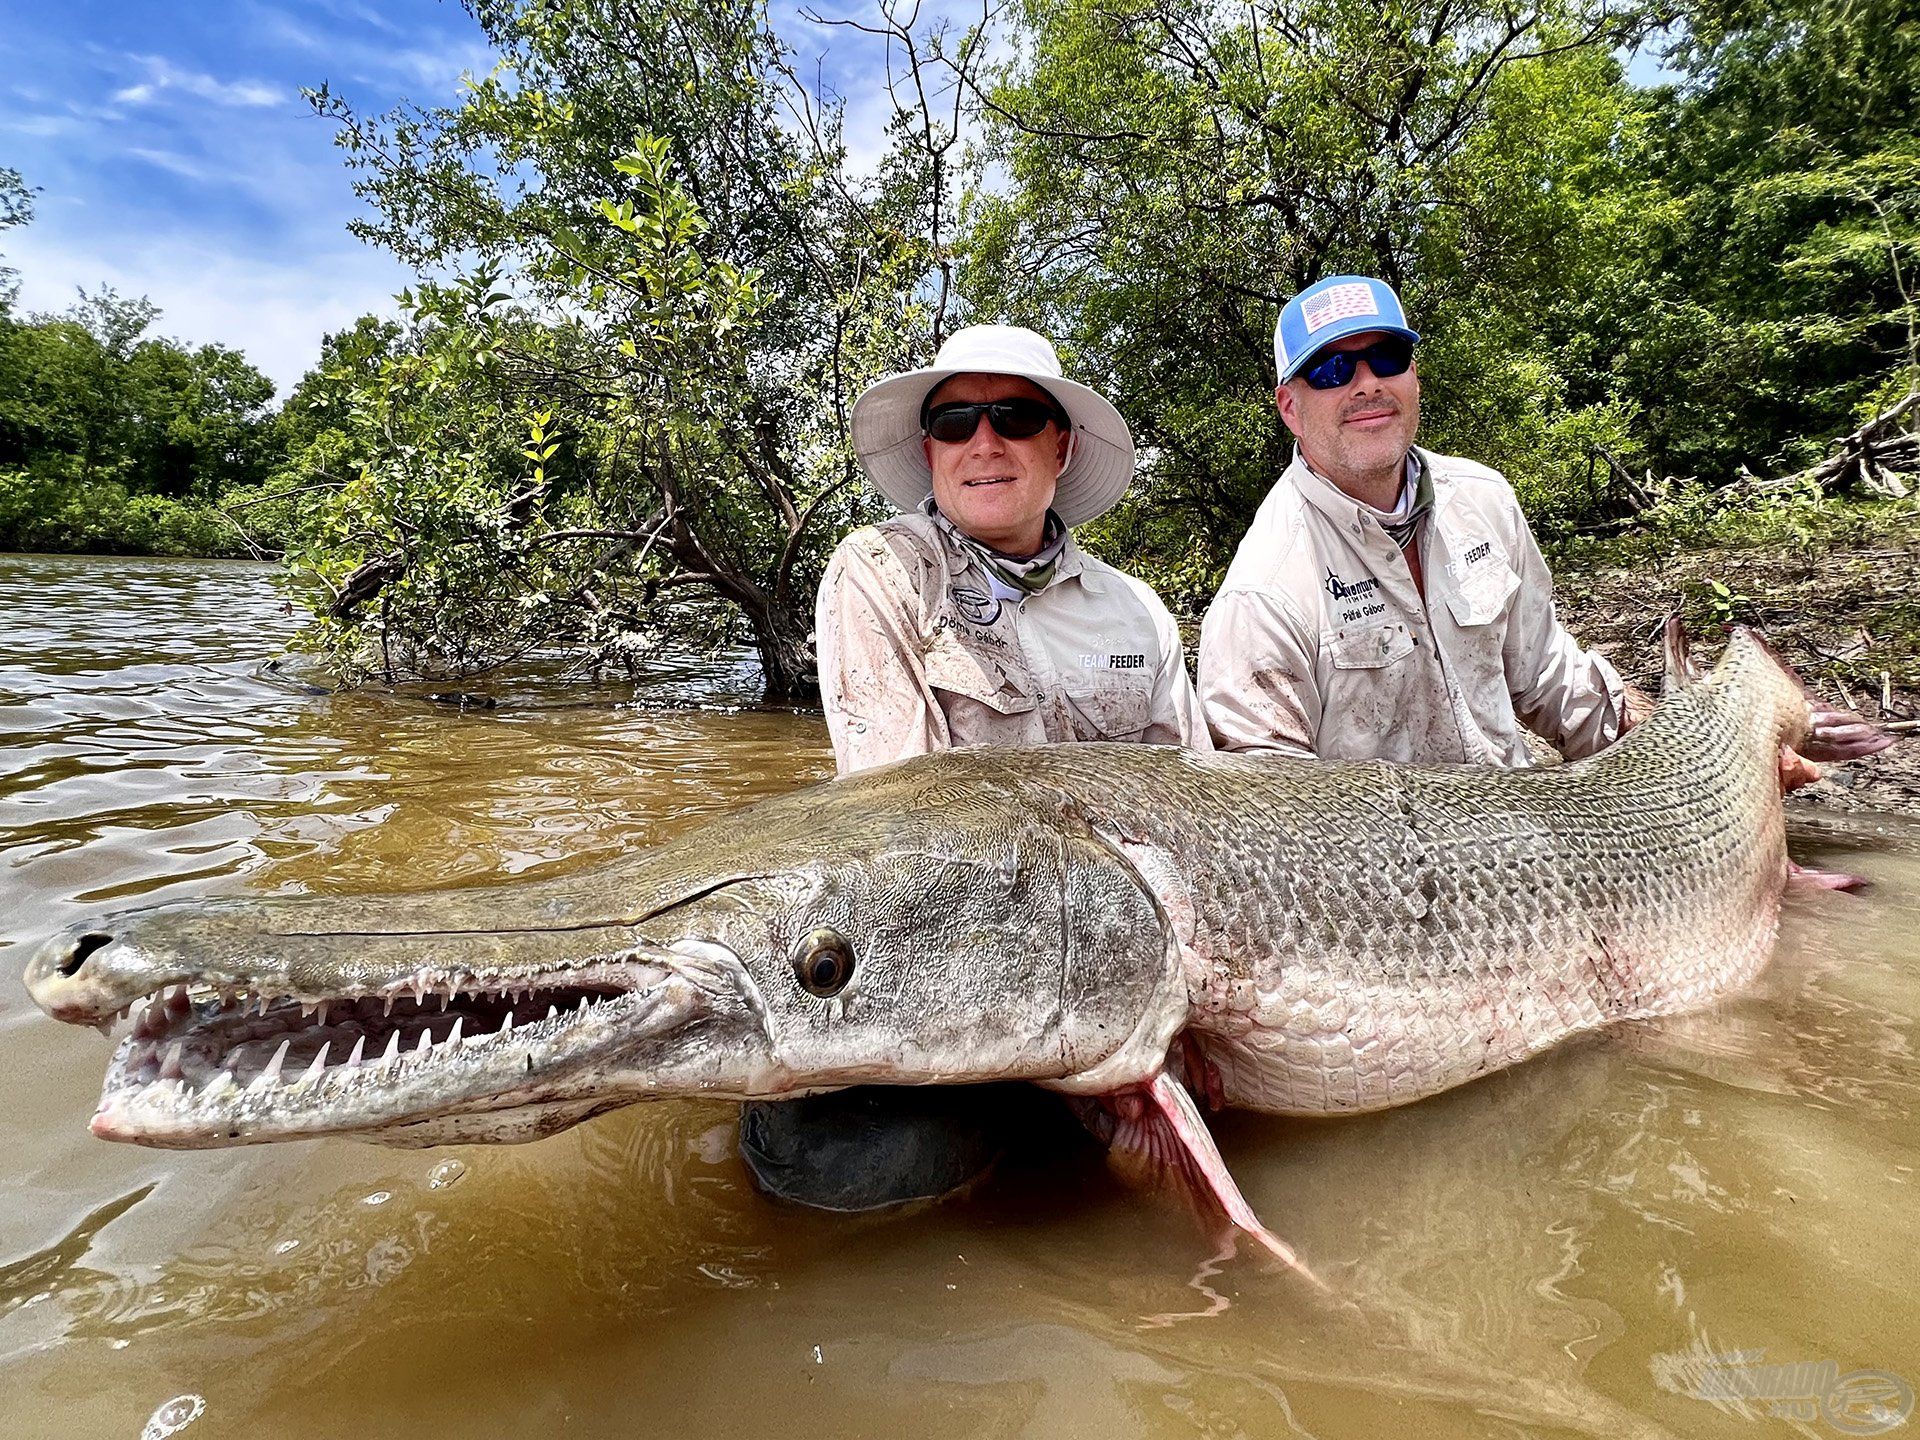 Az alligator gar, amely egy mega méretű csukára hasonlít leginkább, Texasban, a Trinity folyóban él